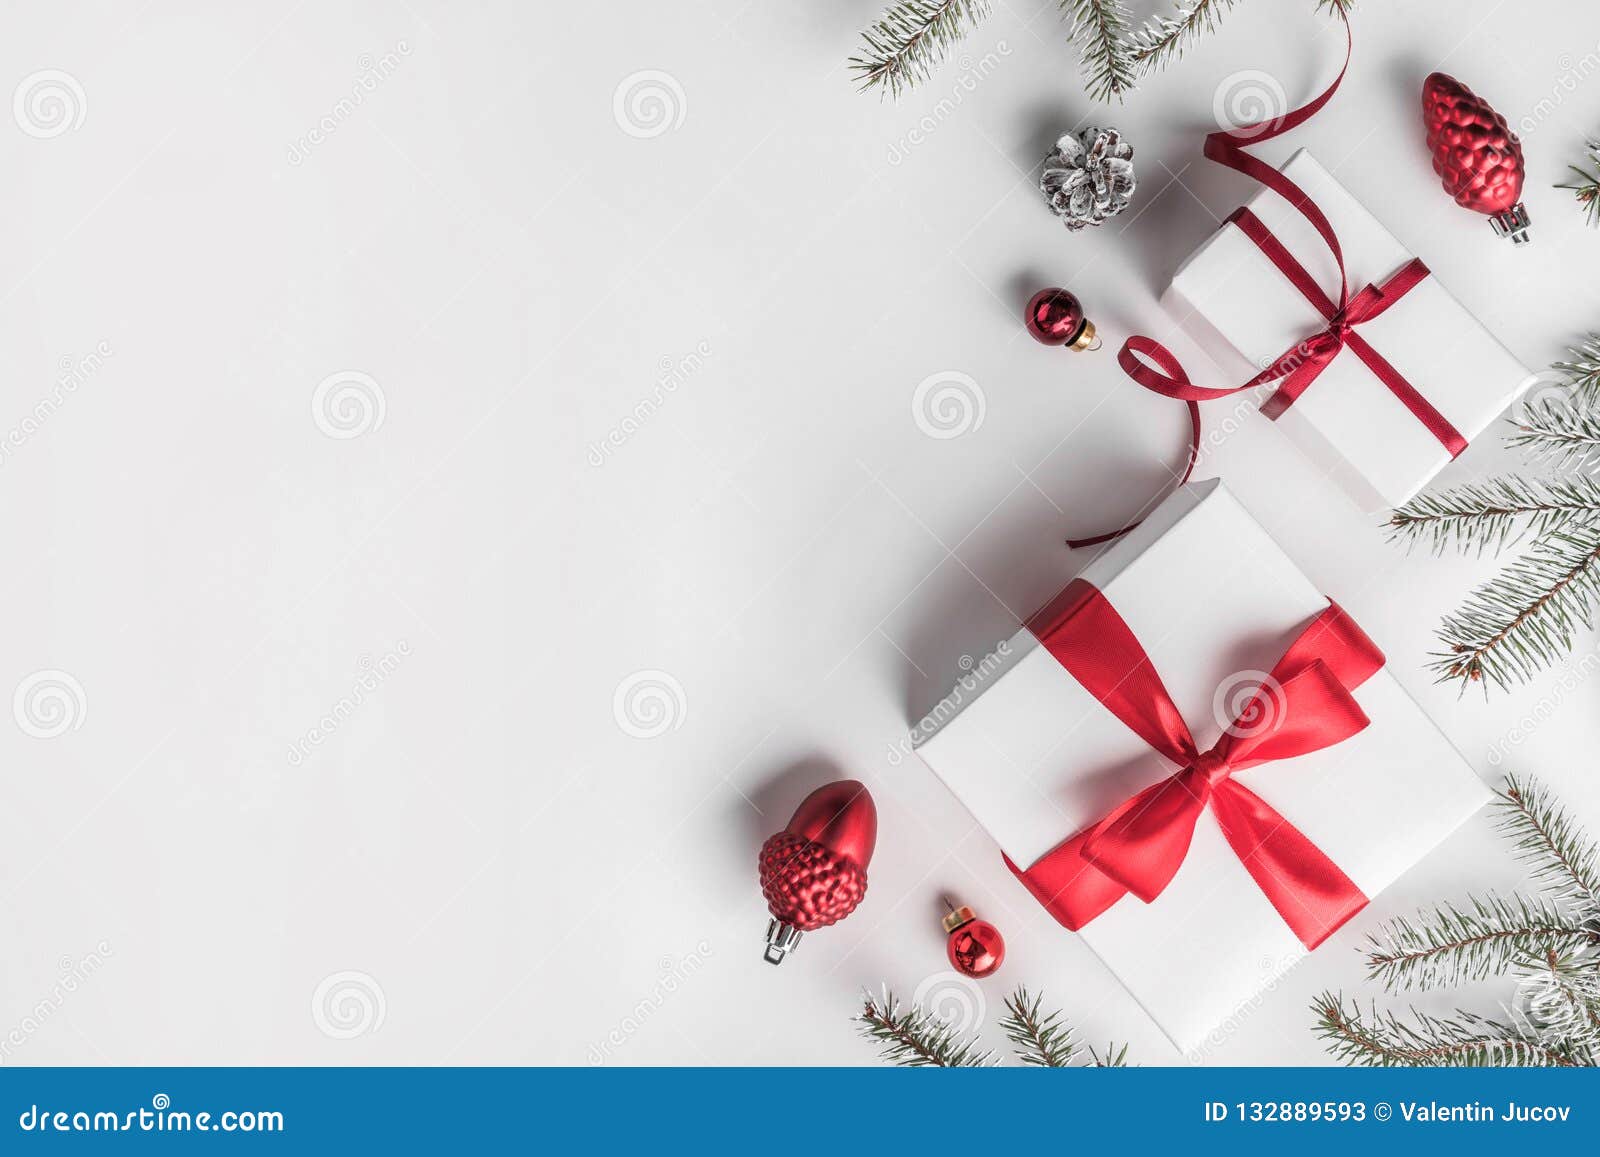 Nếu bạn yêu thích mùa Giáng sinh, hộp quà Giáng sinh trên nền trắng chắc chắn sẽ khiến bạn phát cuồng! Tất cả vật dụng đều được sắp xếp cẩn thận trên nền trắng tinh khiết để tạo nên một bức tranh đẹp mắt. Hãy nhấn vào hình ảnh để khám phá những điều bất ngờ và tinh tế bên trong chiếc hộp quà Giáng sinh tuyệt vời này!